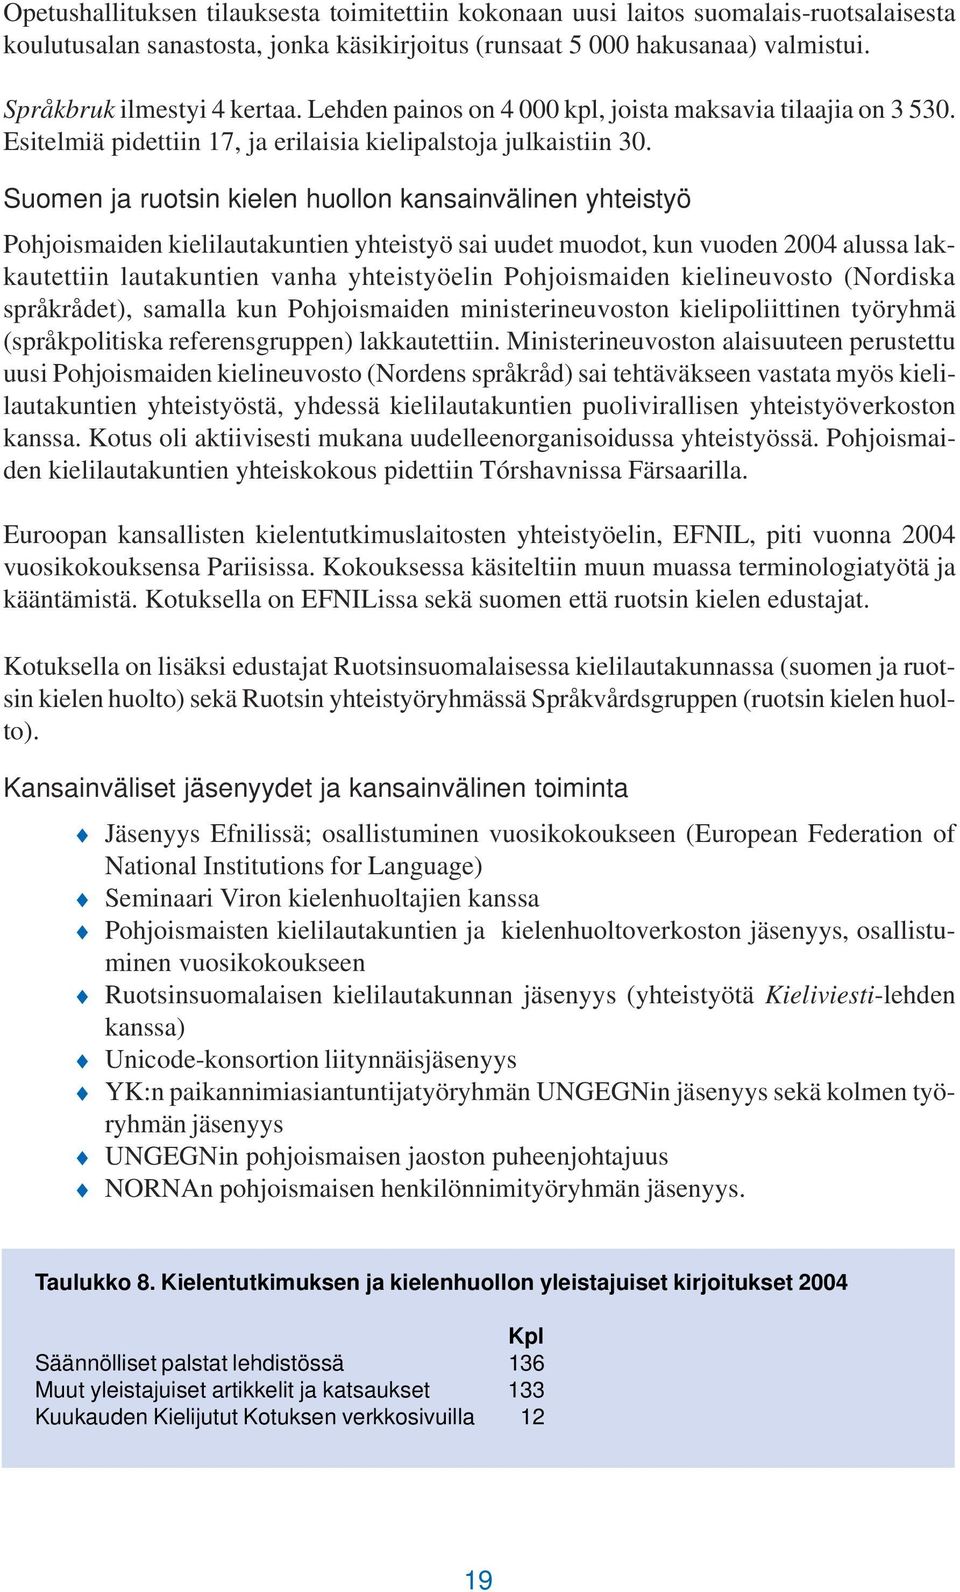 Suomen ja ruotsin kielen huollon kansainvälinen yhteistyö Pohjoismaiden kielilautakuntien yhteistyö sai uudet muodot, kun vuoden 2004 alussa lakkautettiin lautakuntien vanha yhteistyöelin